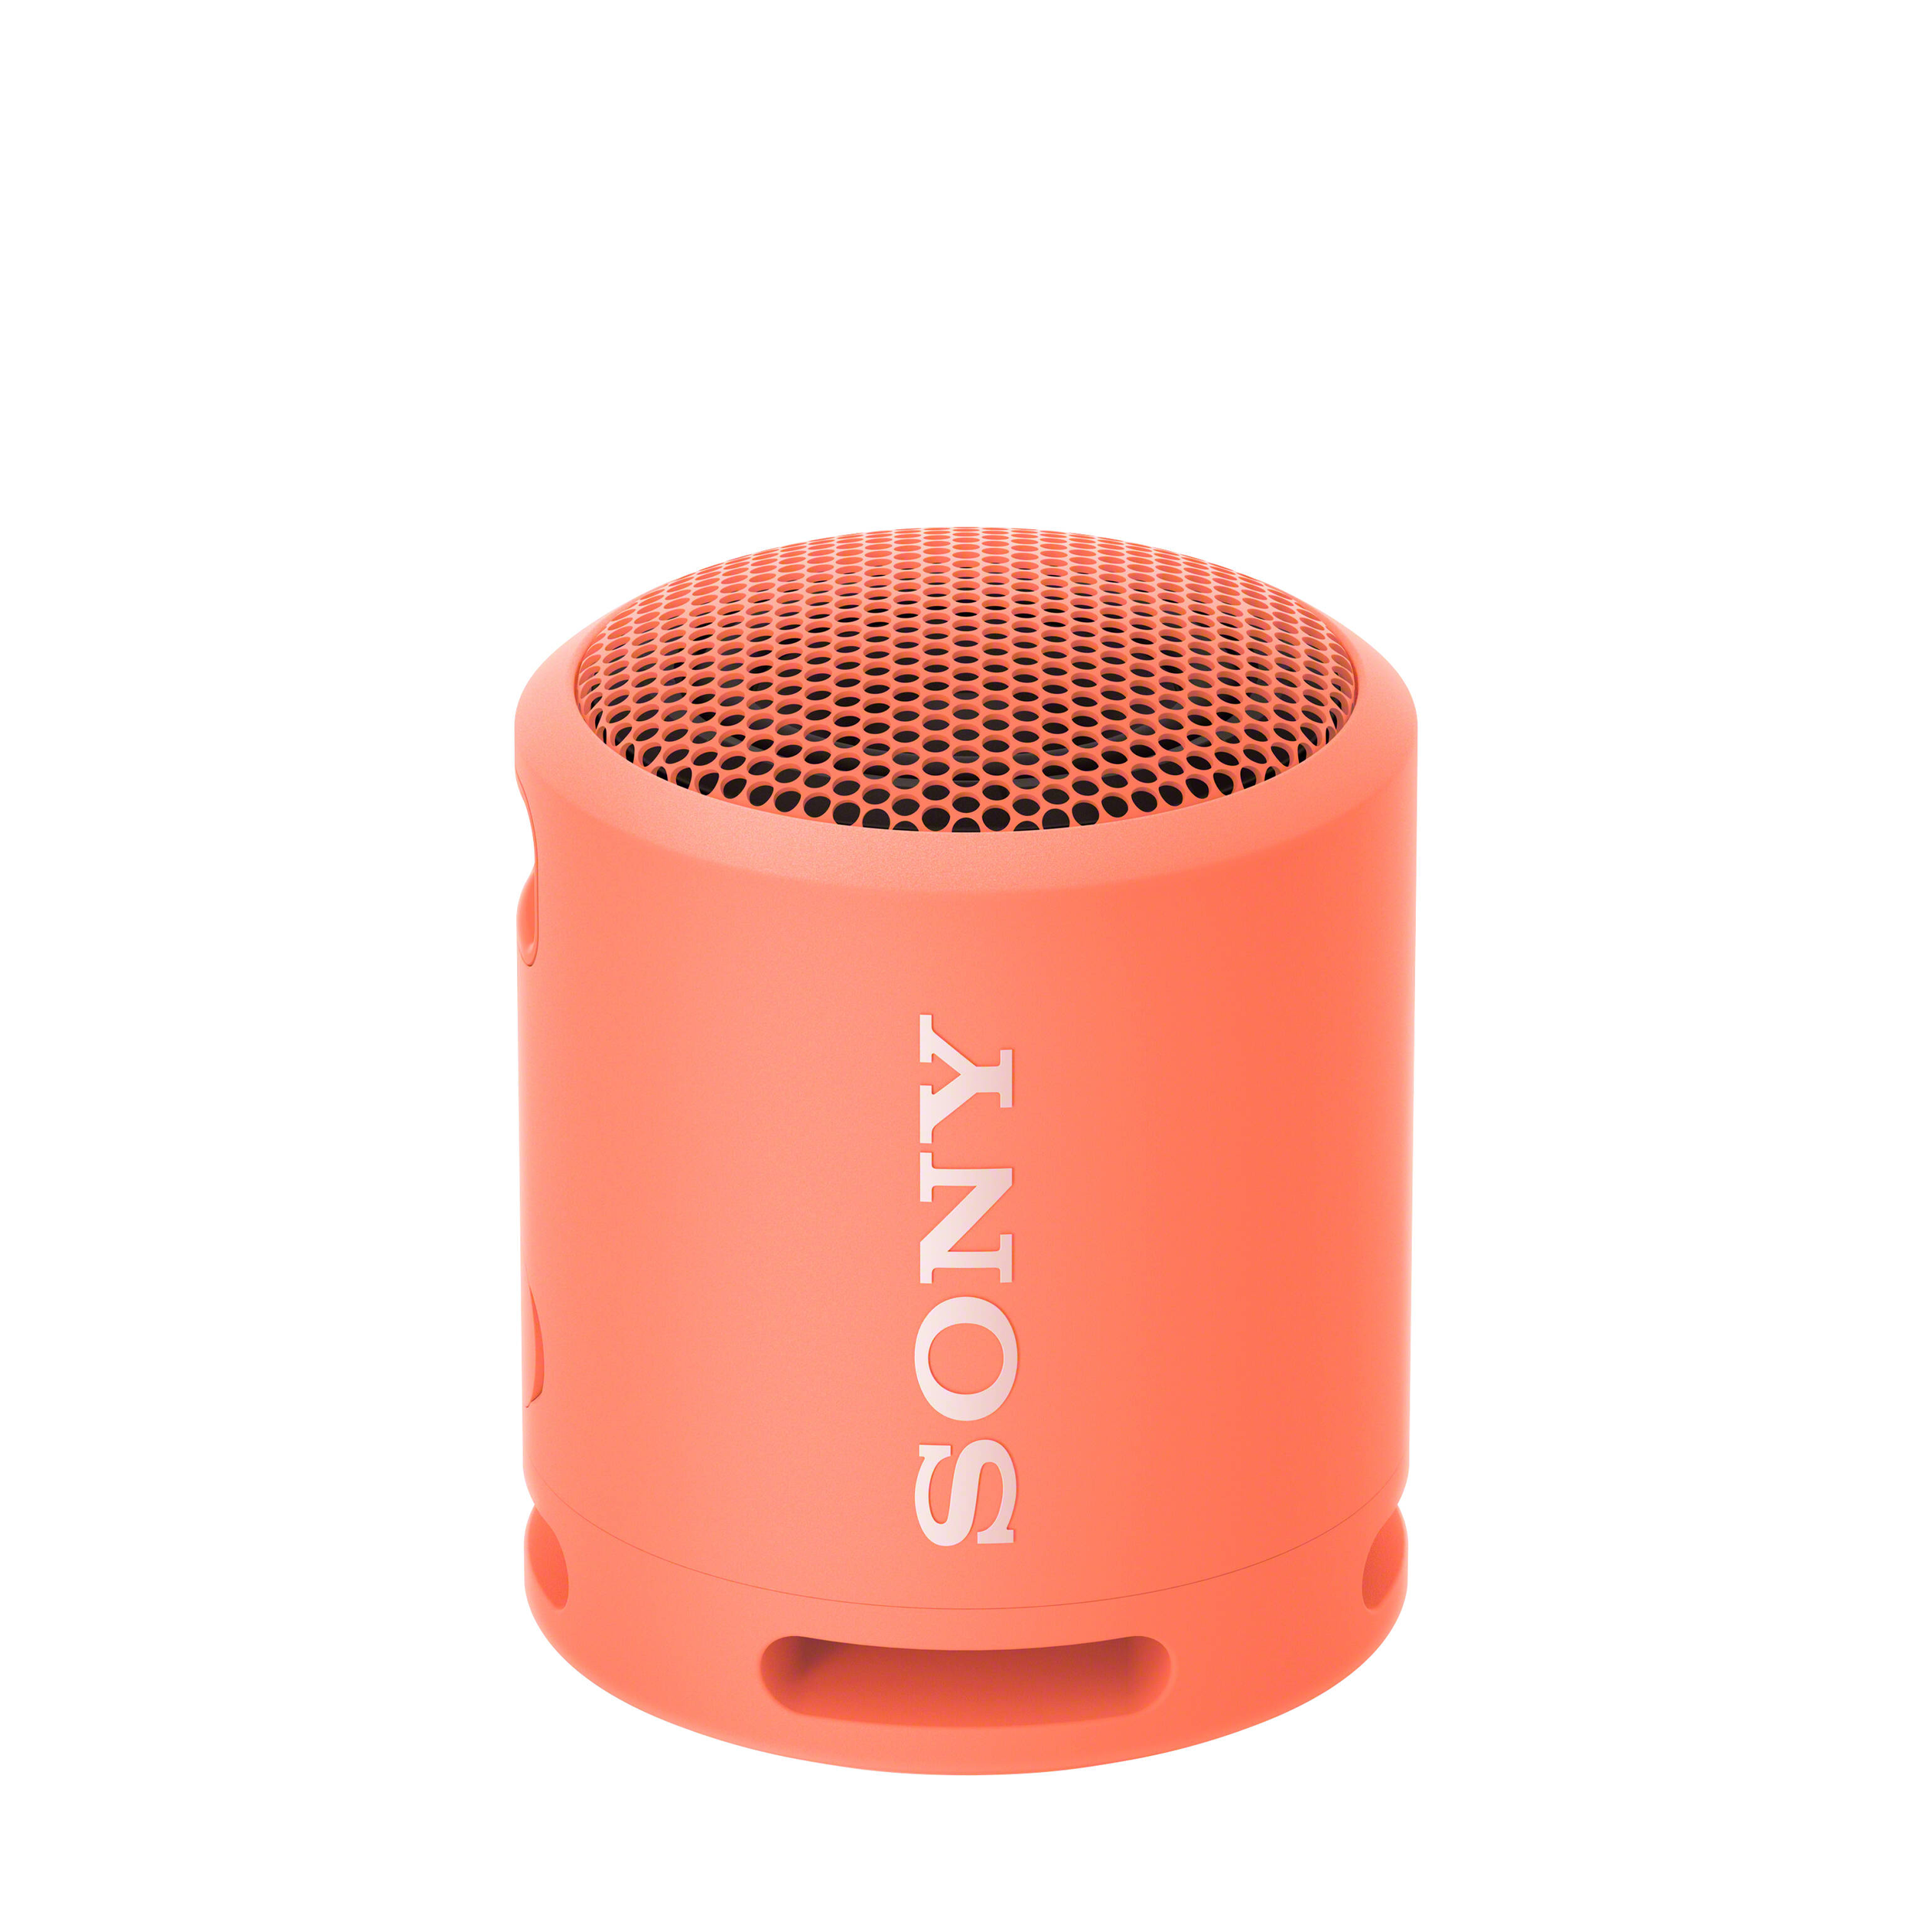 Sony XB13 EXTRA BASS Portable Wireless Speaker